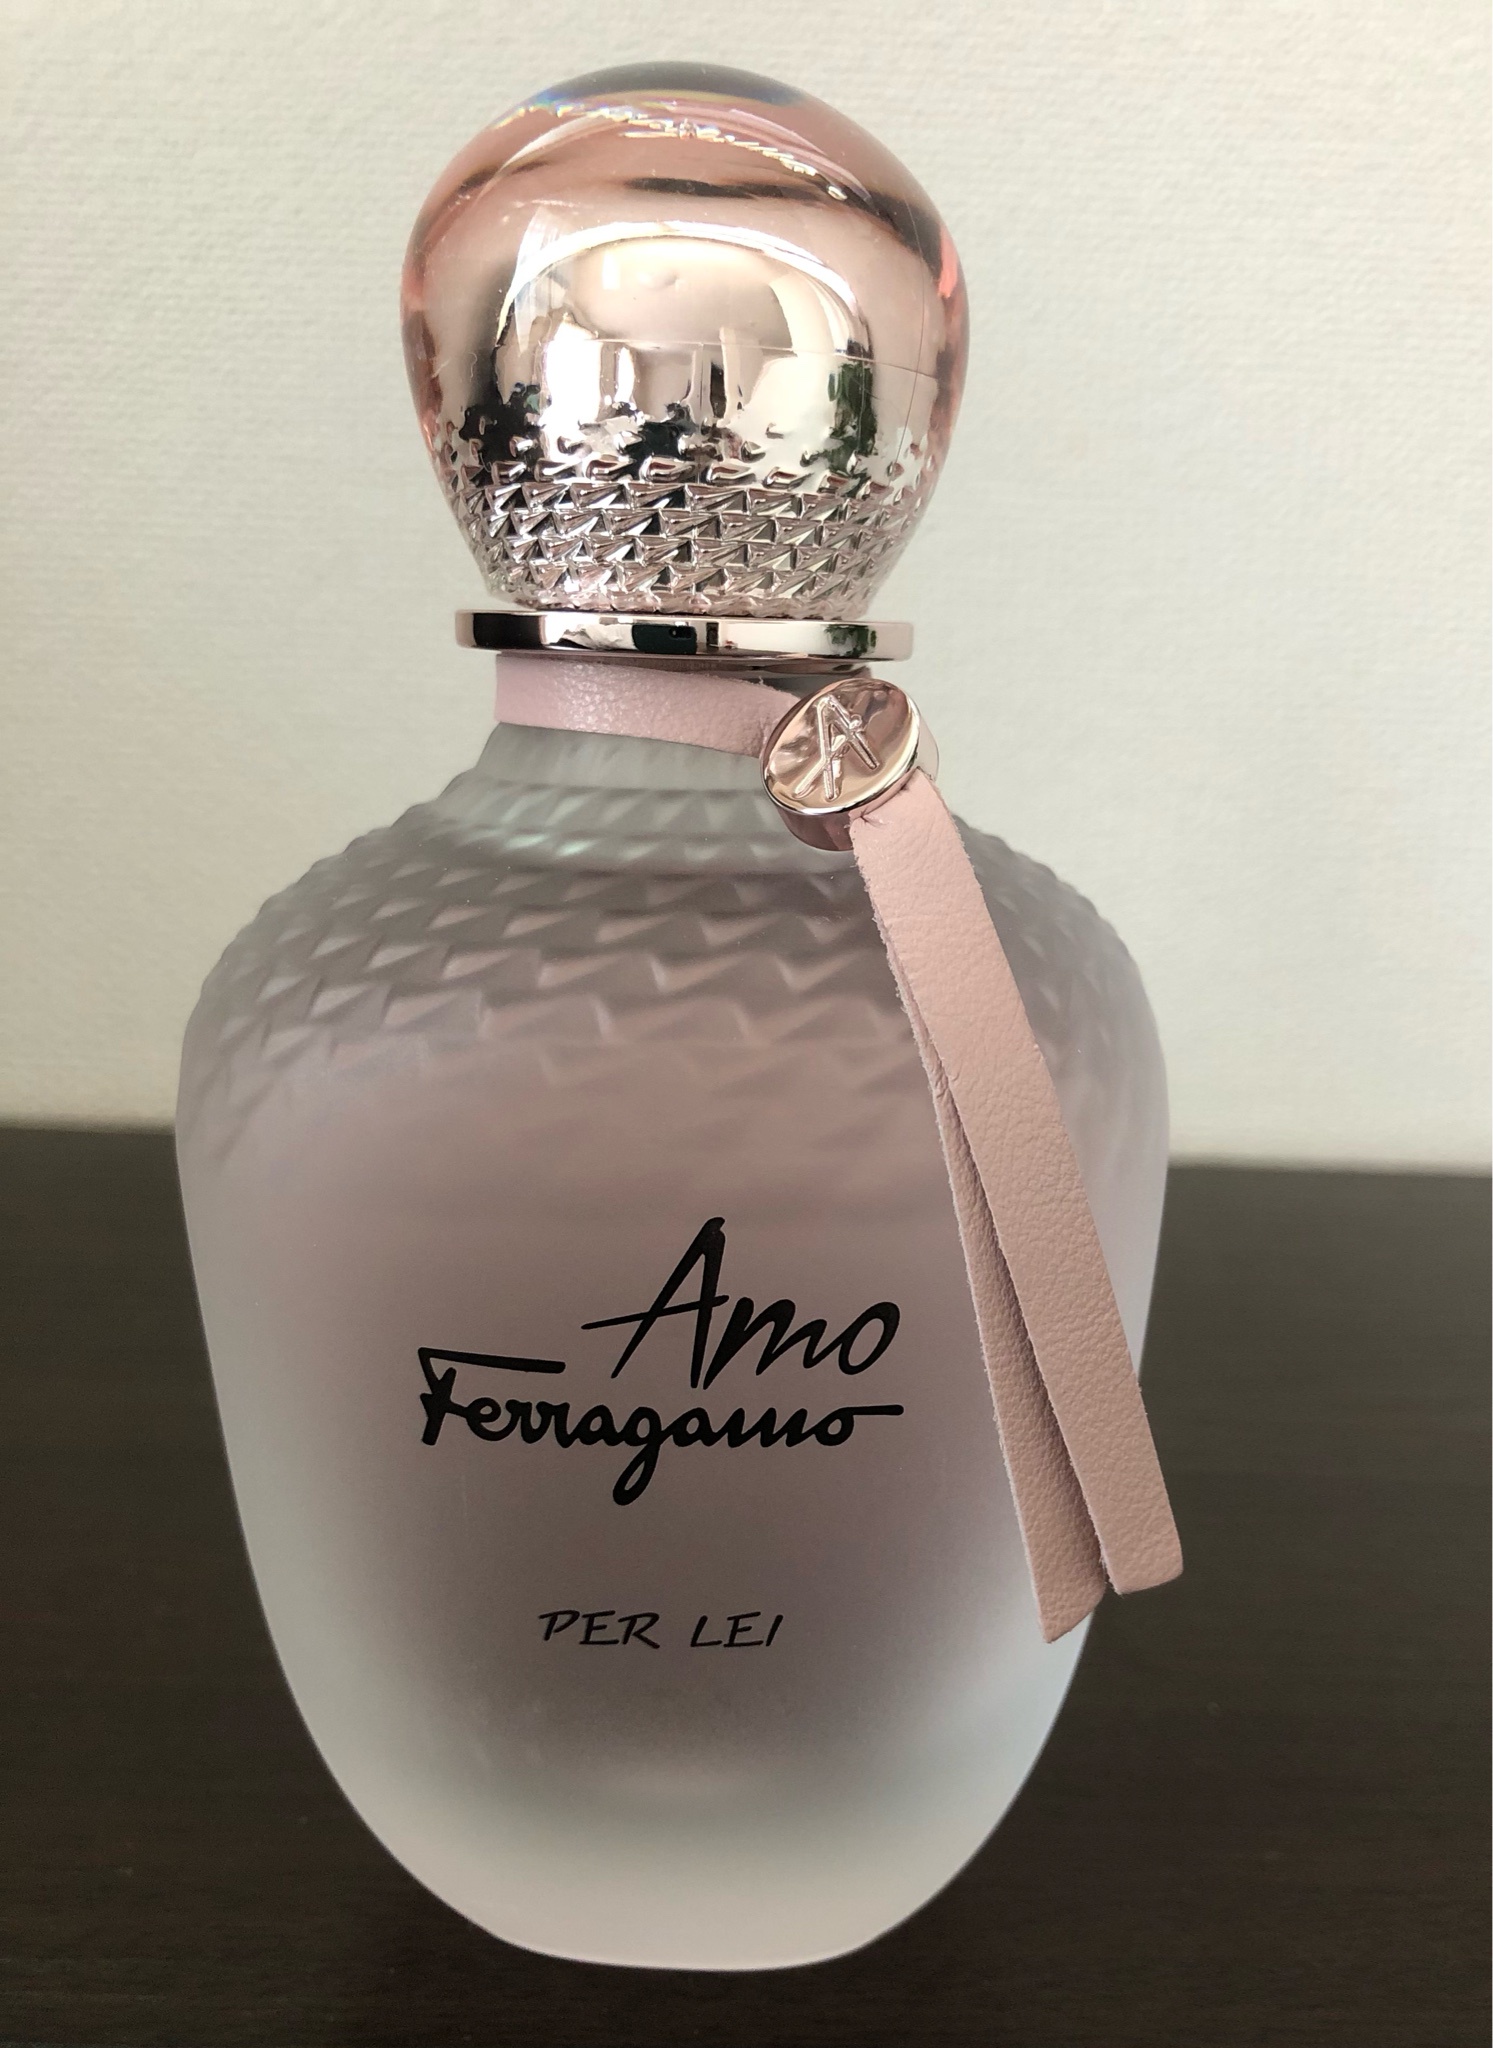 直送商品 愛らしい香り♡フェラガモ(Ferragamo)の香水/アモ フェラガモ